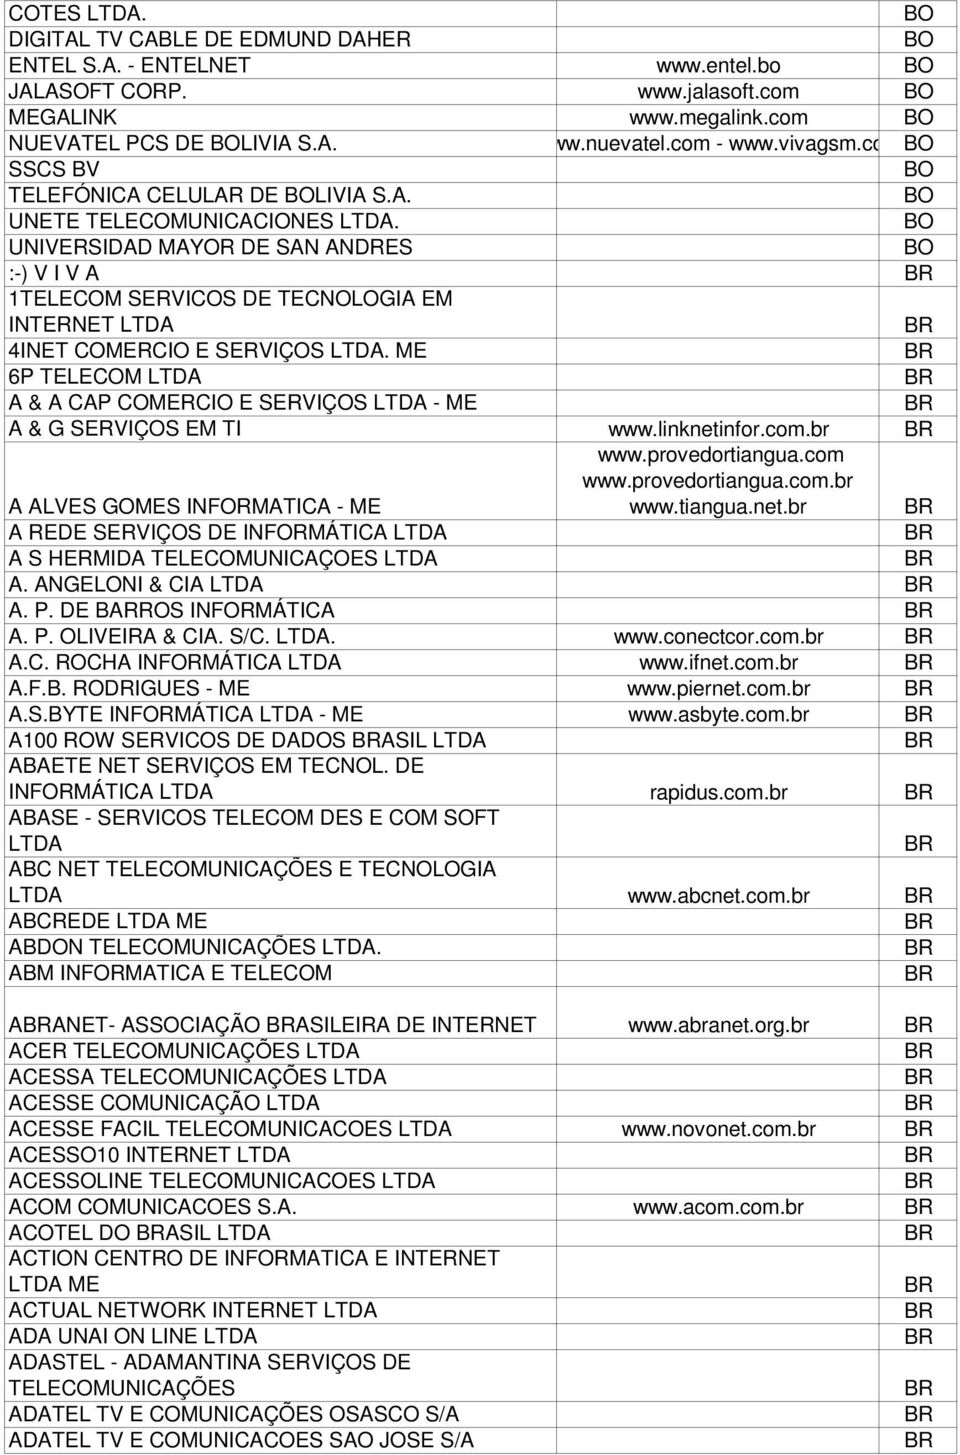 ME 6P TELEM A & A CAP MERCIO E SERVIÇOS - ME A & G SERVIÇOS EM TI www.linknetinfor.com.br A ALVES GOMES INFORMATICA - ME www.provedortiangua.com www.provedortiangua.com.br www.tiangua.net.br A REDE SERVIÇOS DE INFORMÁTICA A S HERMIDA TELEMUNICAÇOES A.